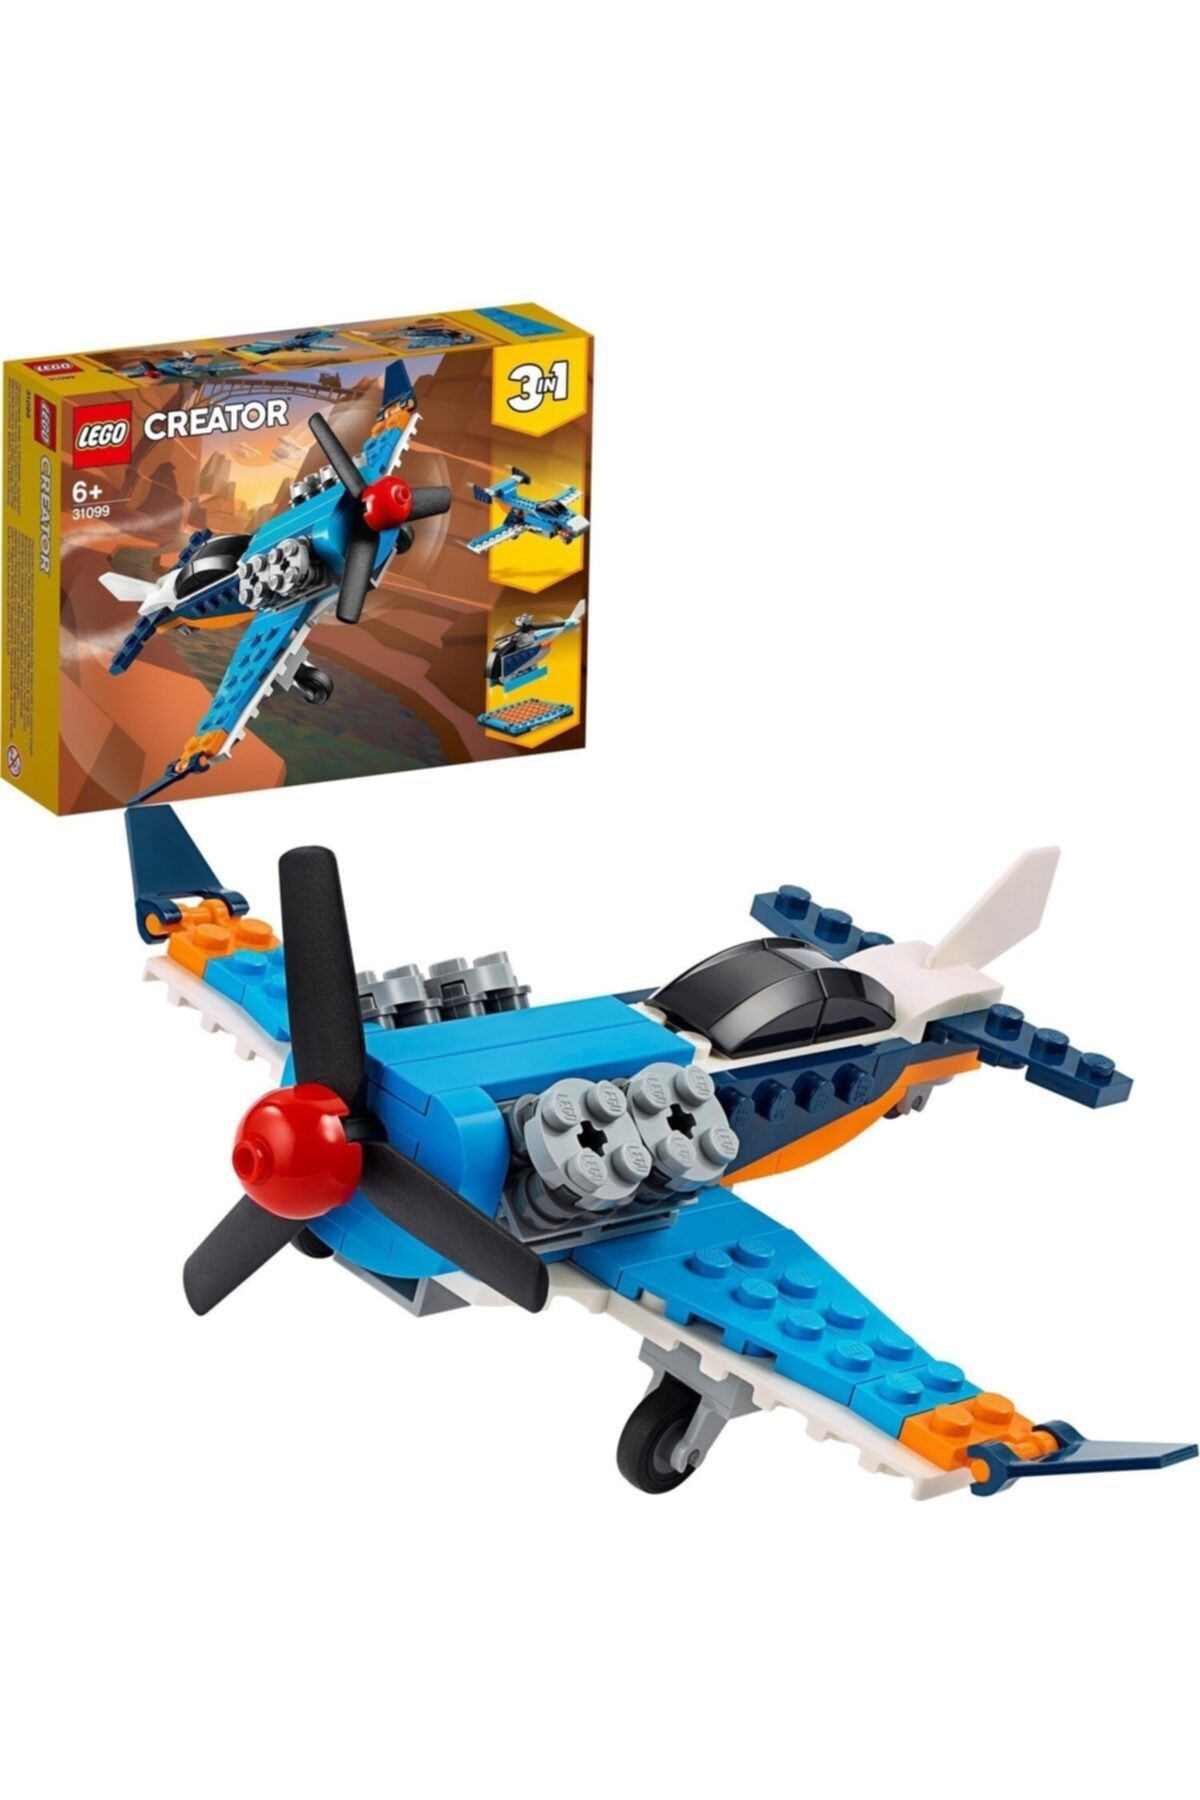 LEGO Creator Pervaneli Uçak 31099 6 Yaş 3 Farklı Set Oyuncak